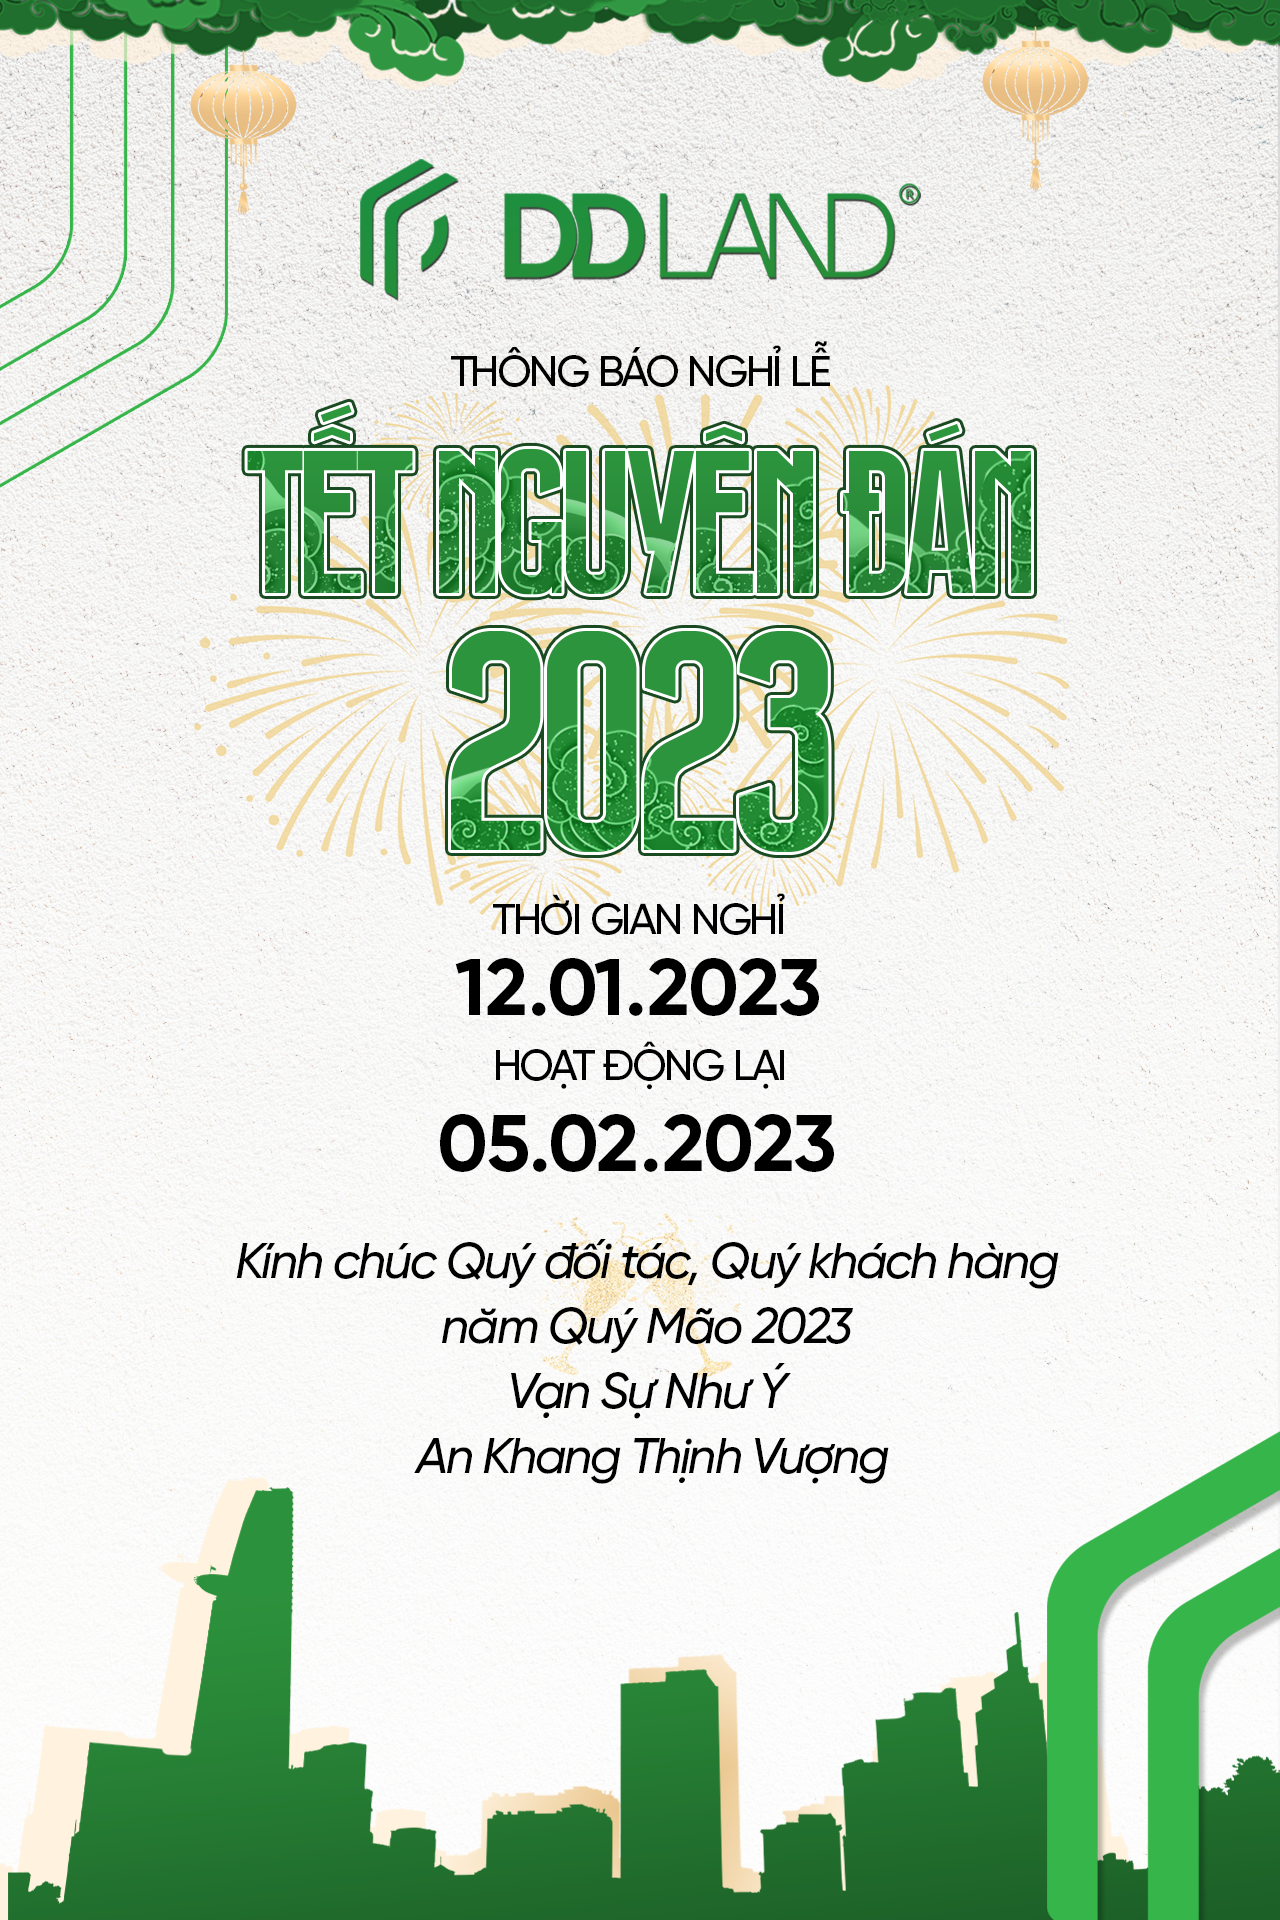 DD LAND thông báo lịch nghỉ lễ Tết Nguyên Đán 2023